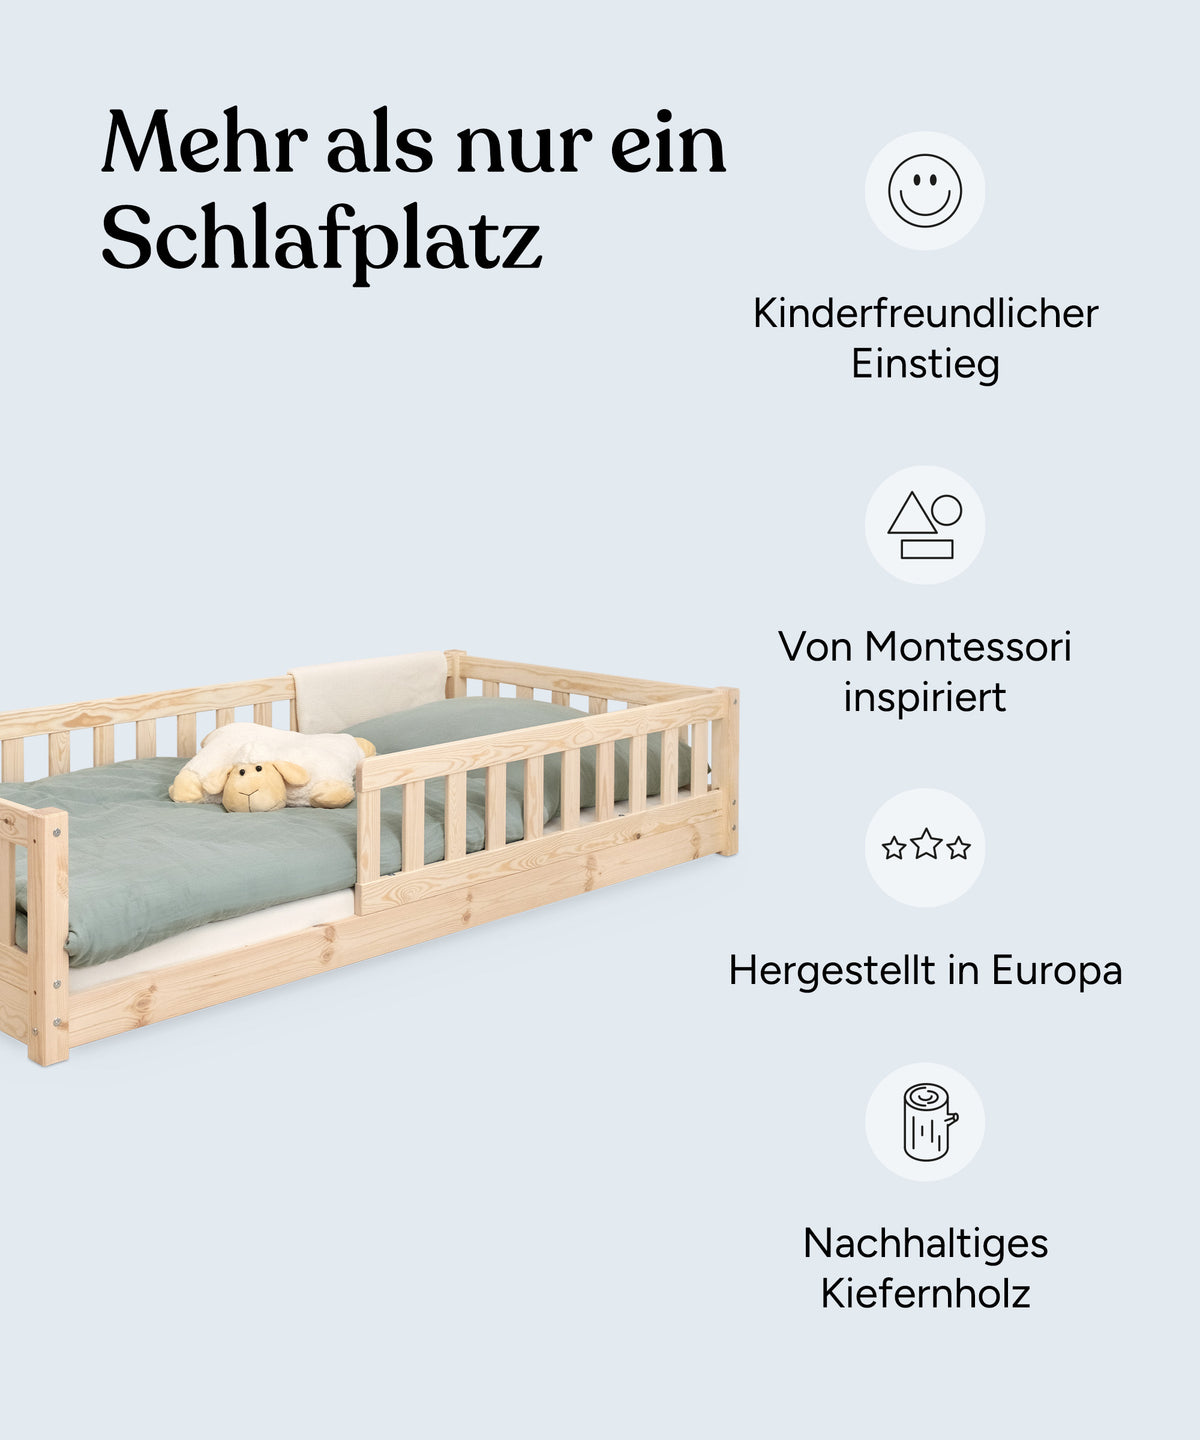 Vorteile Bodenbett Kiefer: Kinderfreundlicher Einstieg, von Montessori inspiriert, hergestellt in Europa, nachhaltiges Kiefernholz.